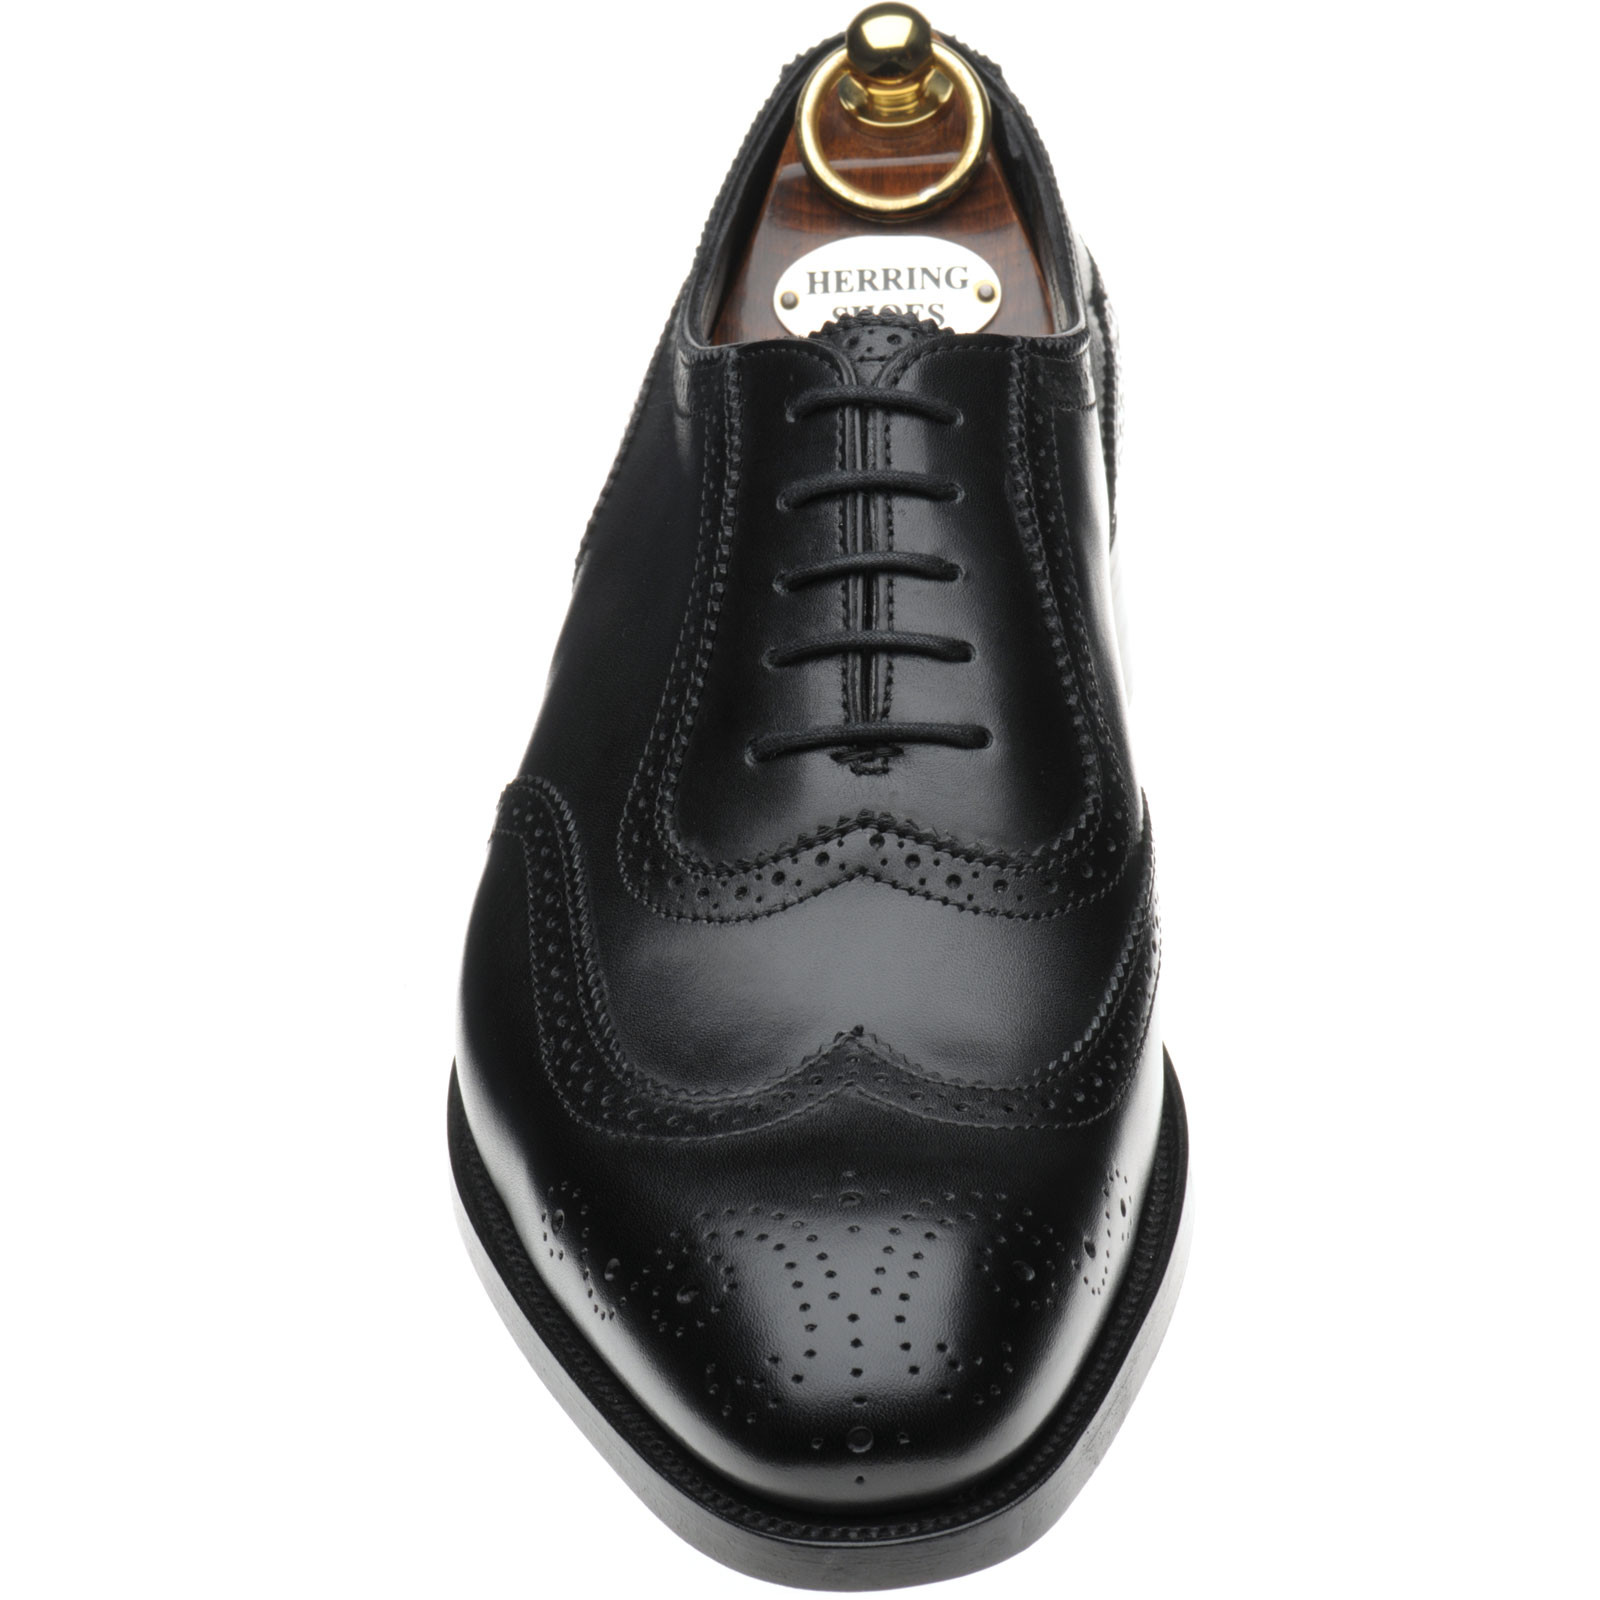 Herring shoes | Herring Premier | Henry II in Black Calf at Herring Shoes